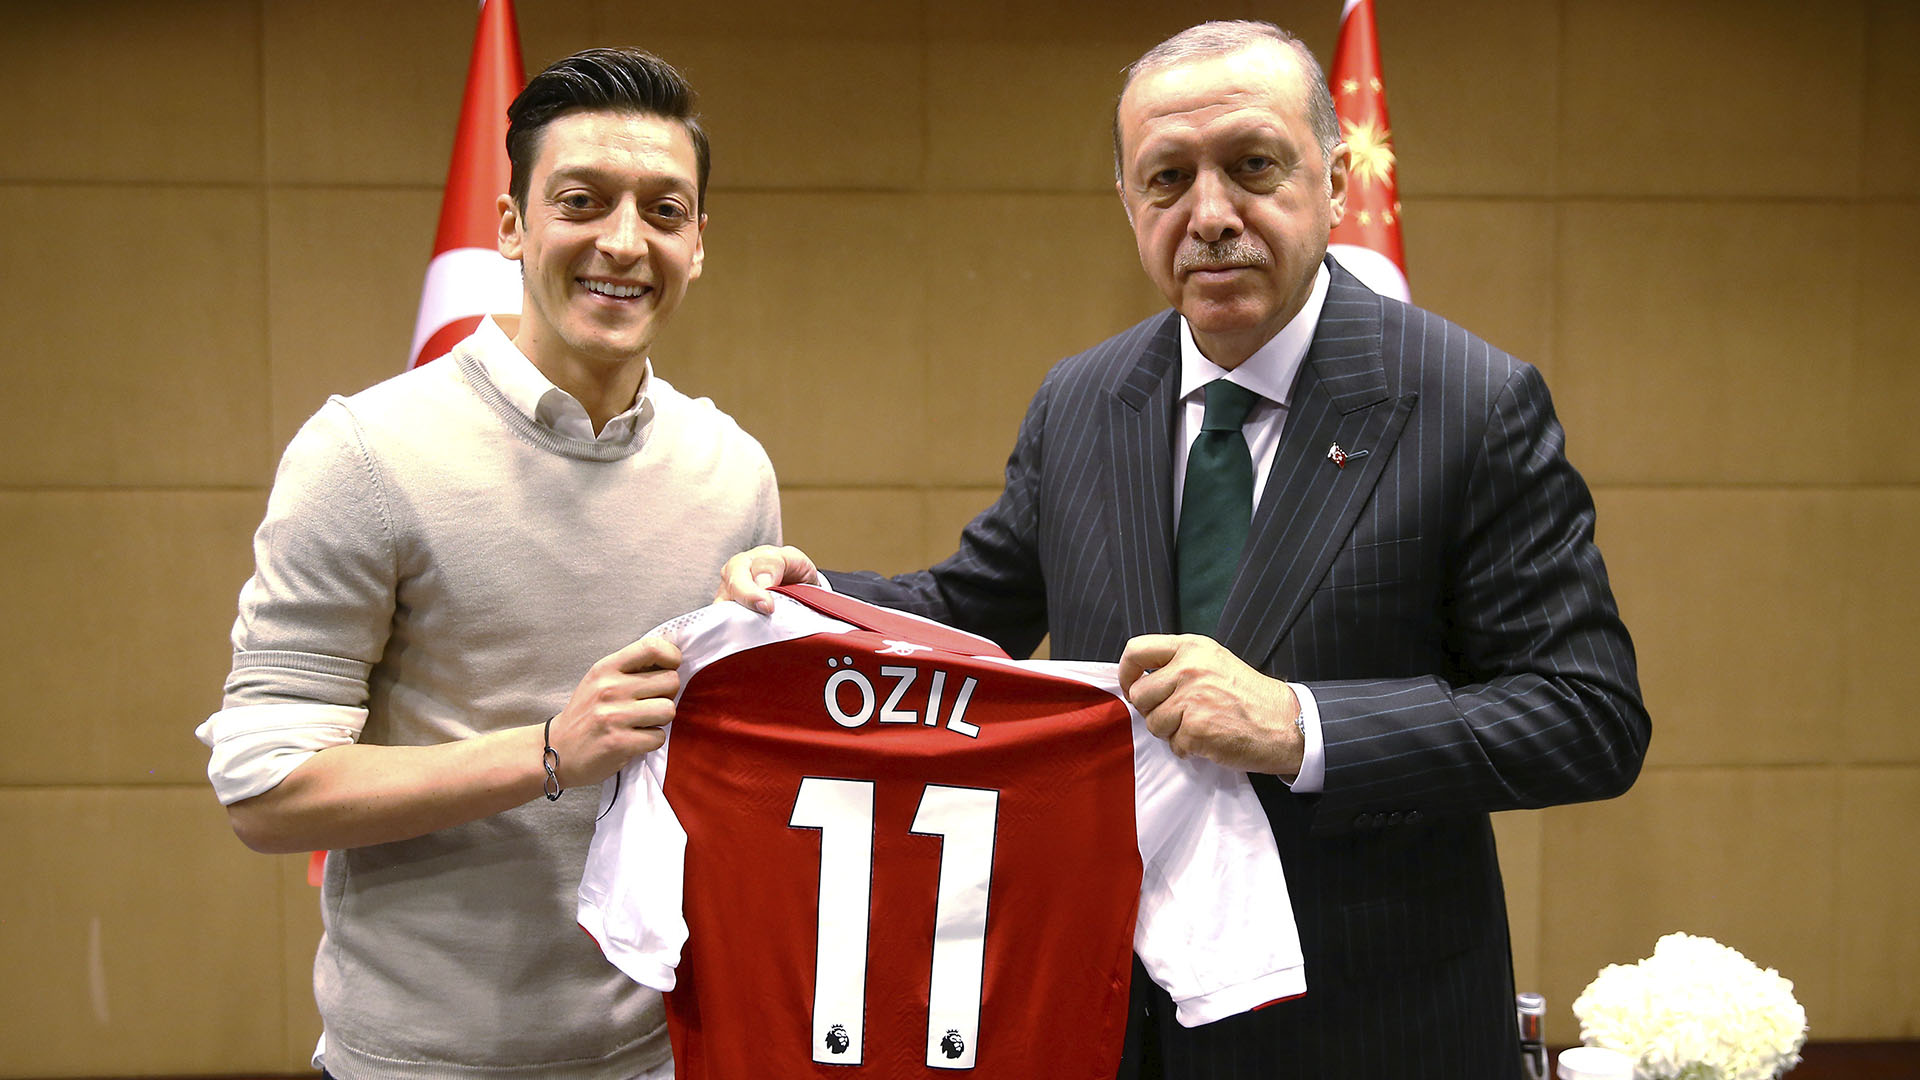 (Reuters) La foto en cuestión entre Ozil y Erdogan